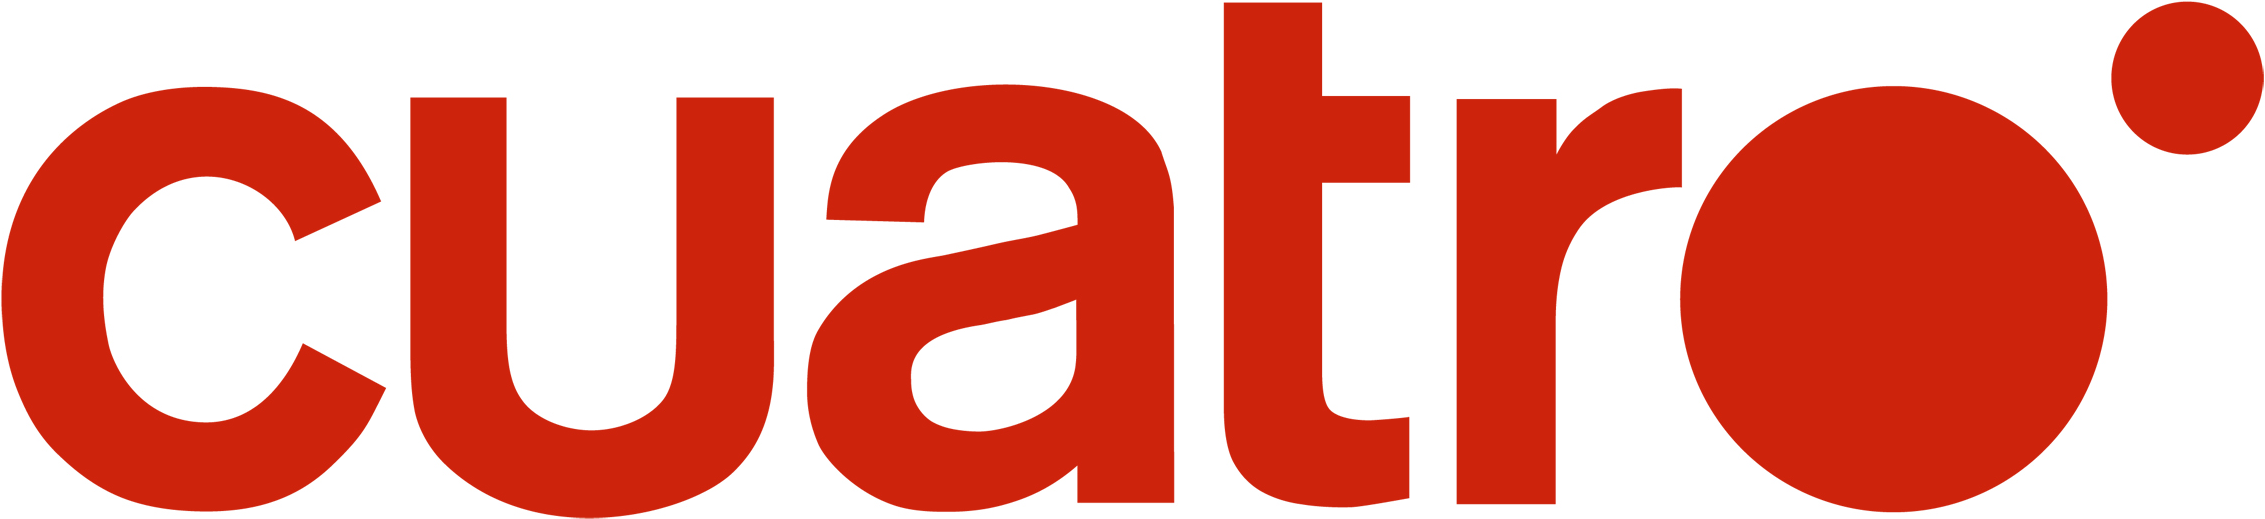 Cuatro logo